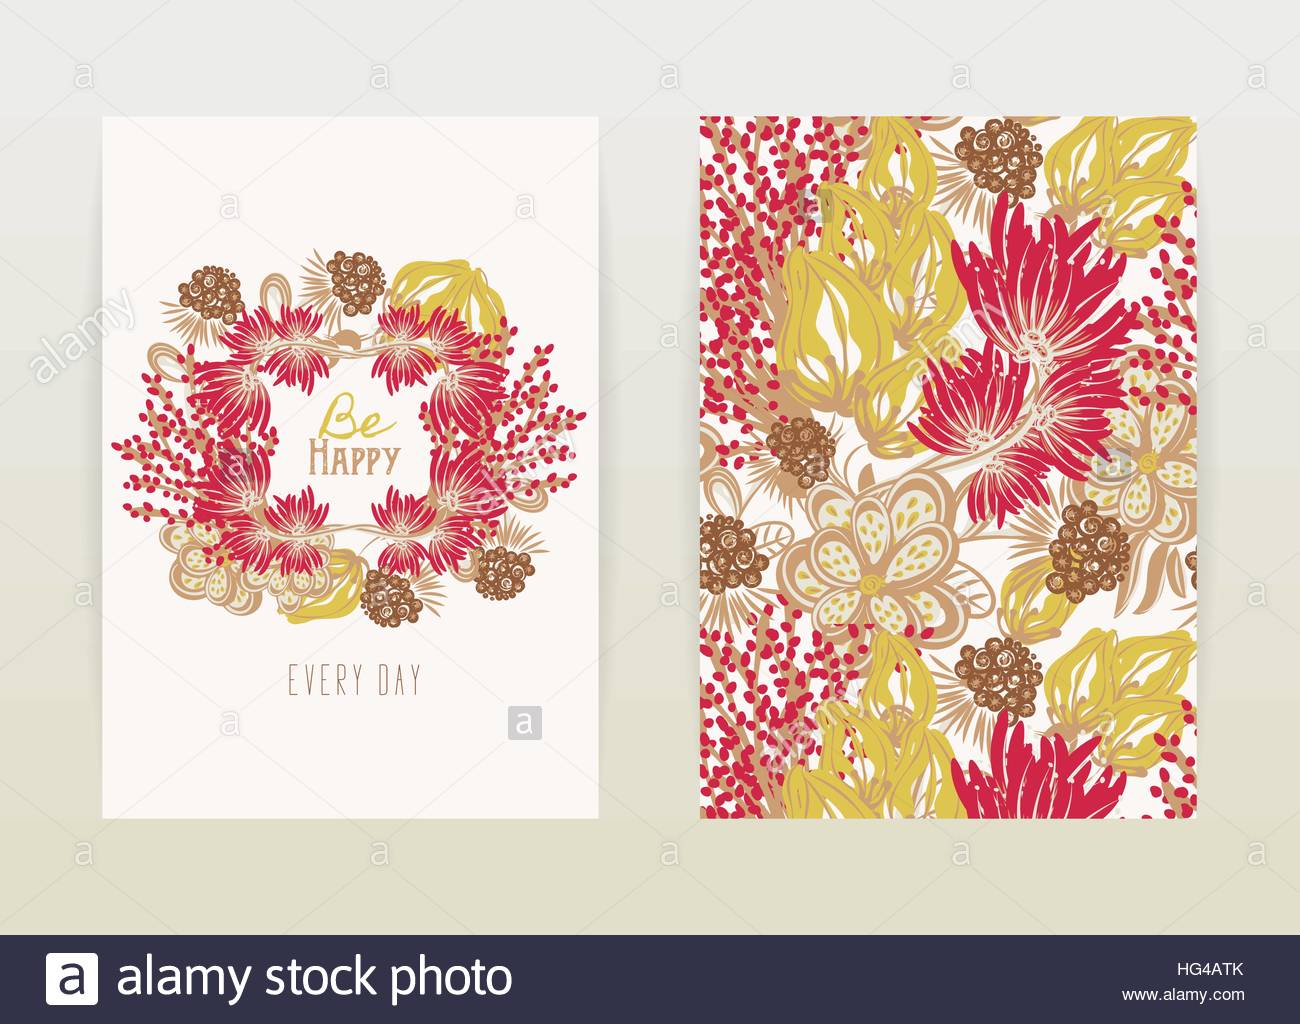 diseno-de-portadas-con-dibujos-florales-flores-creativas-dibujados-a-mano-antecedentes-artisticos-y-coloridos-con-flor-hg4atk  | INS Manuel de Cabanyes